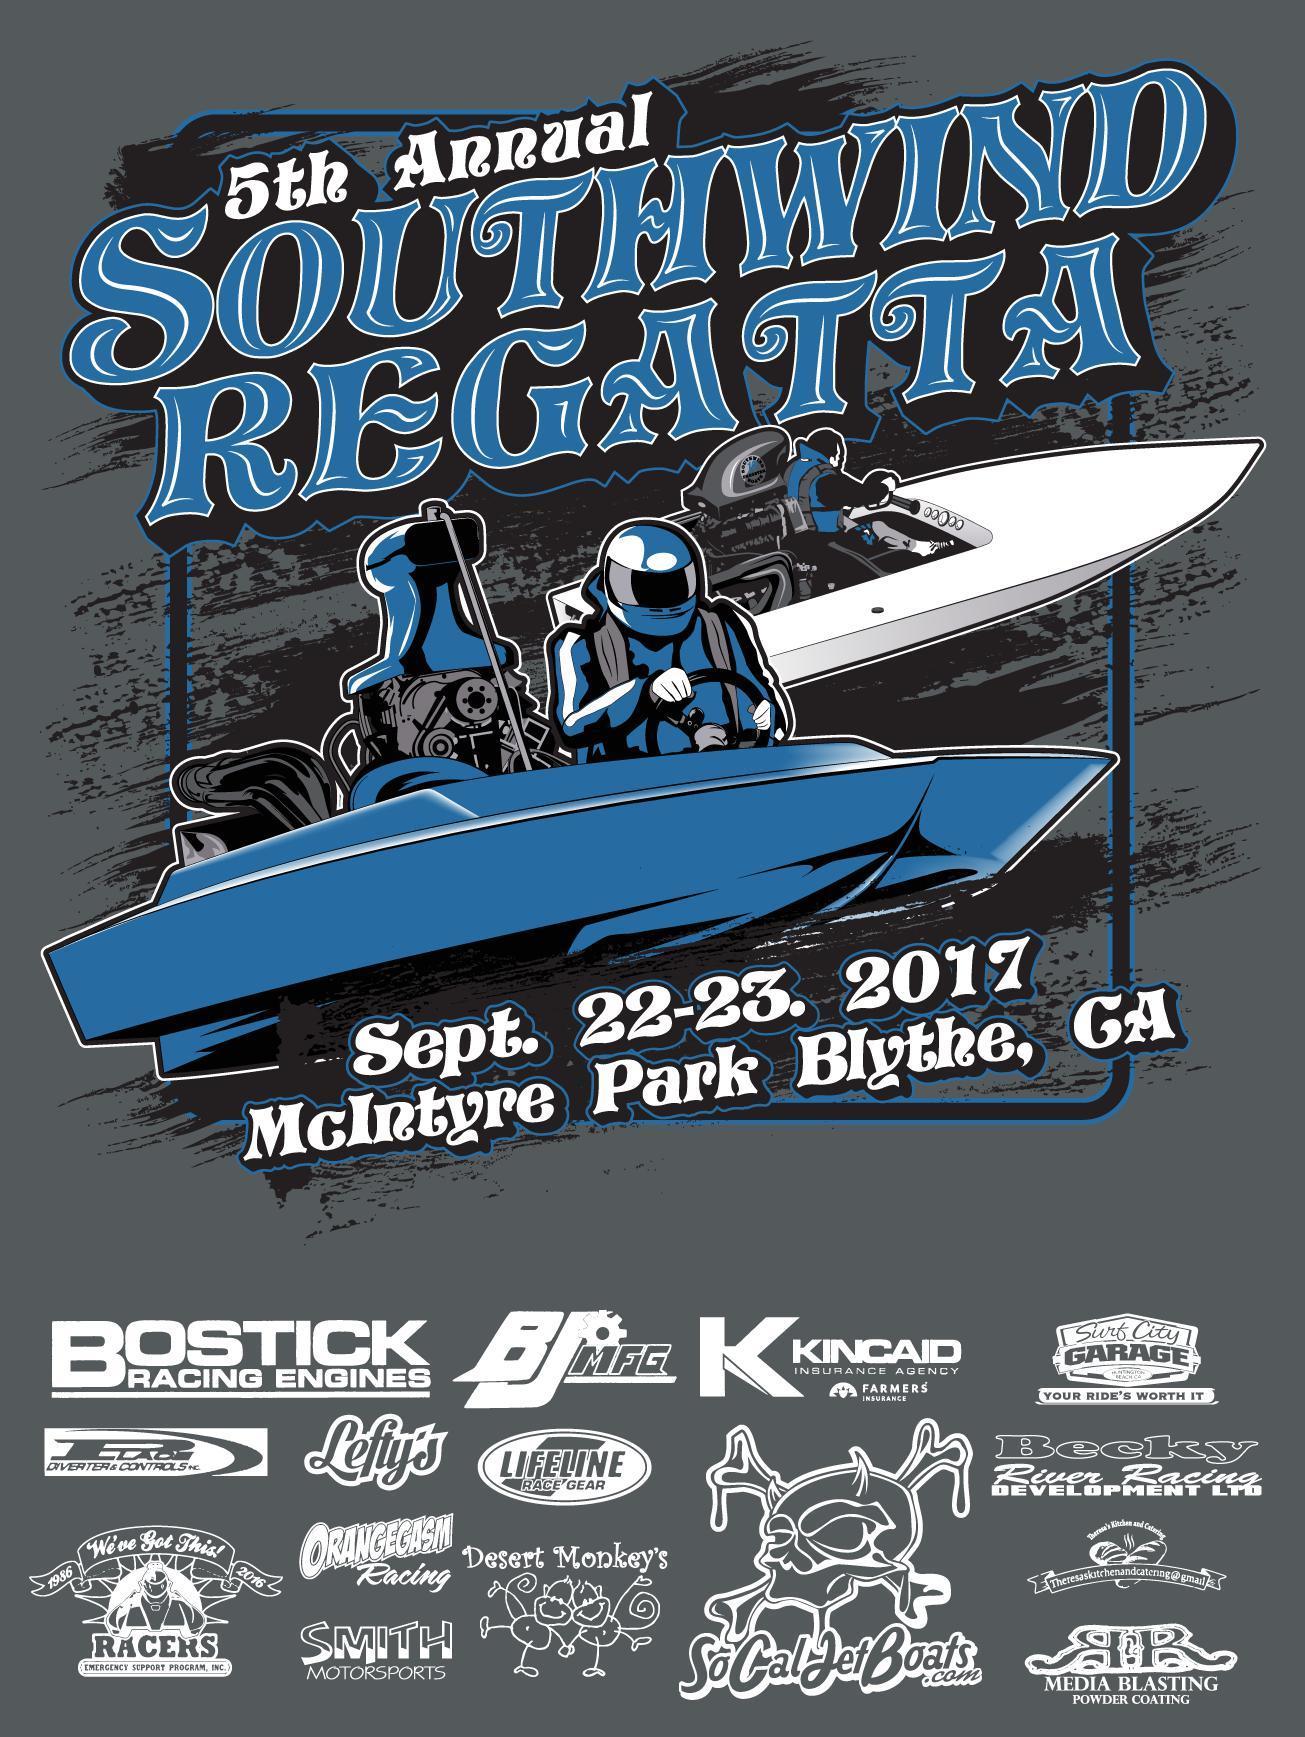 5th Annual Southwind Regatta Poster